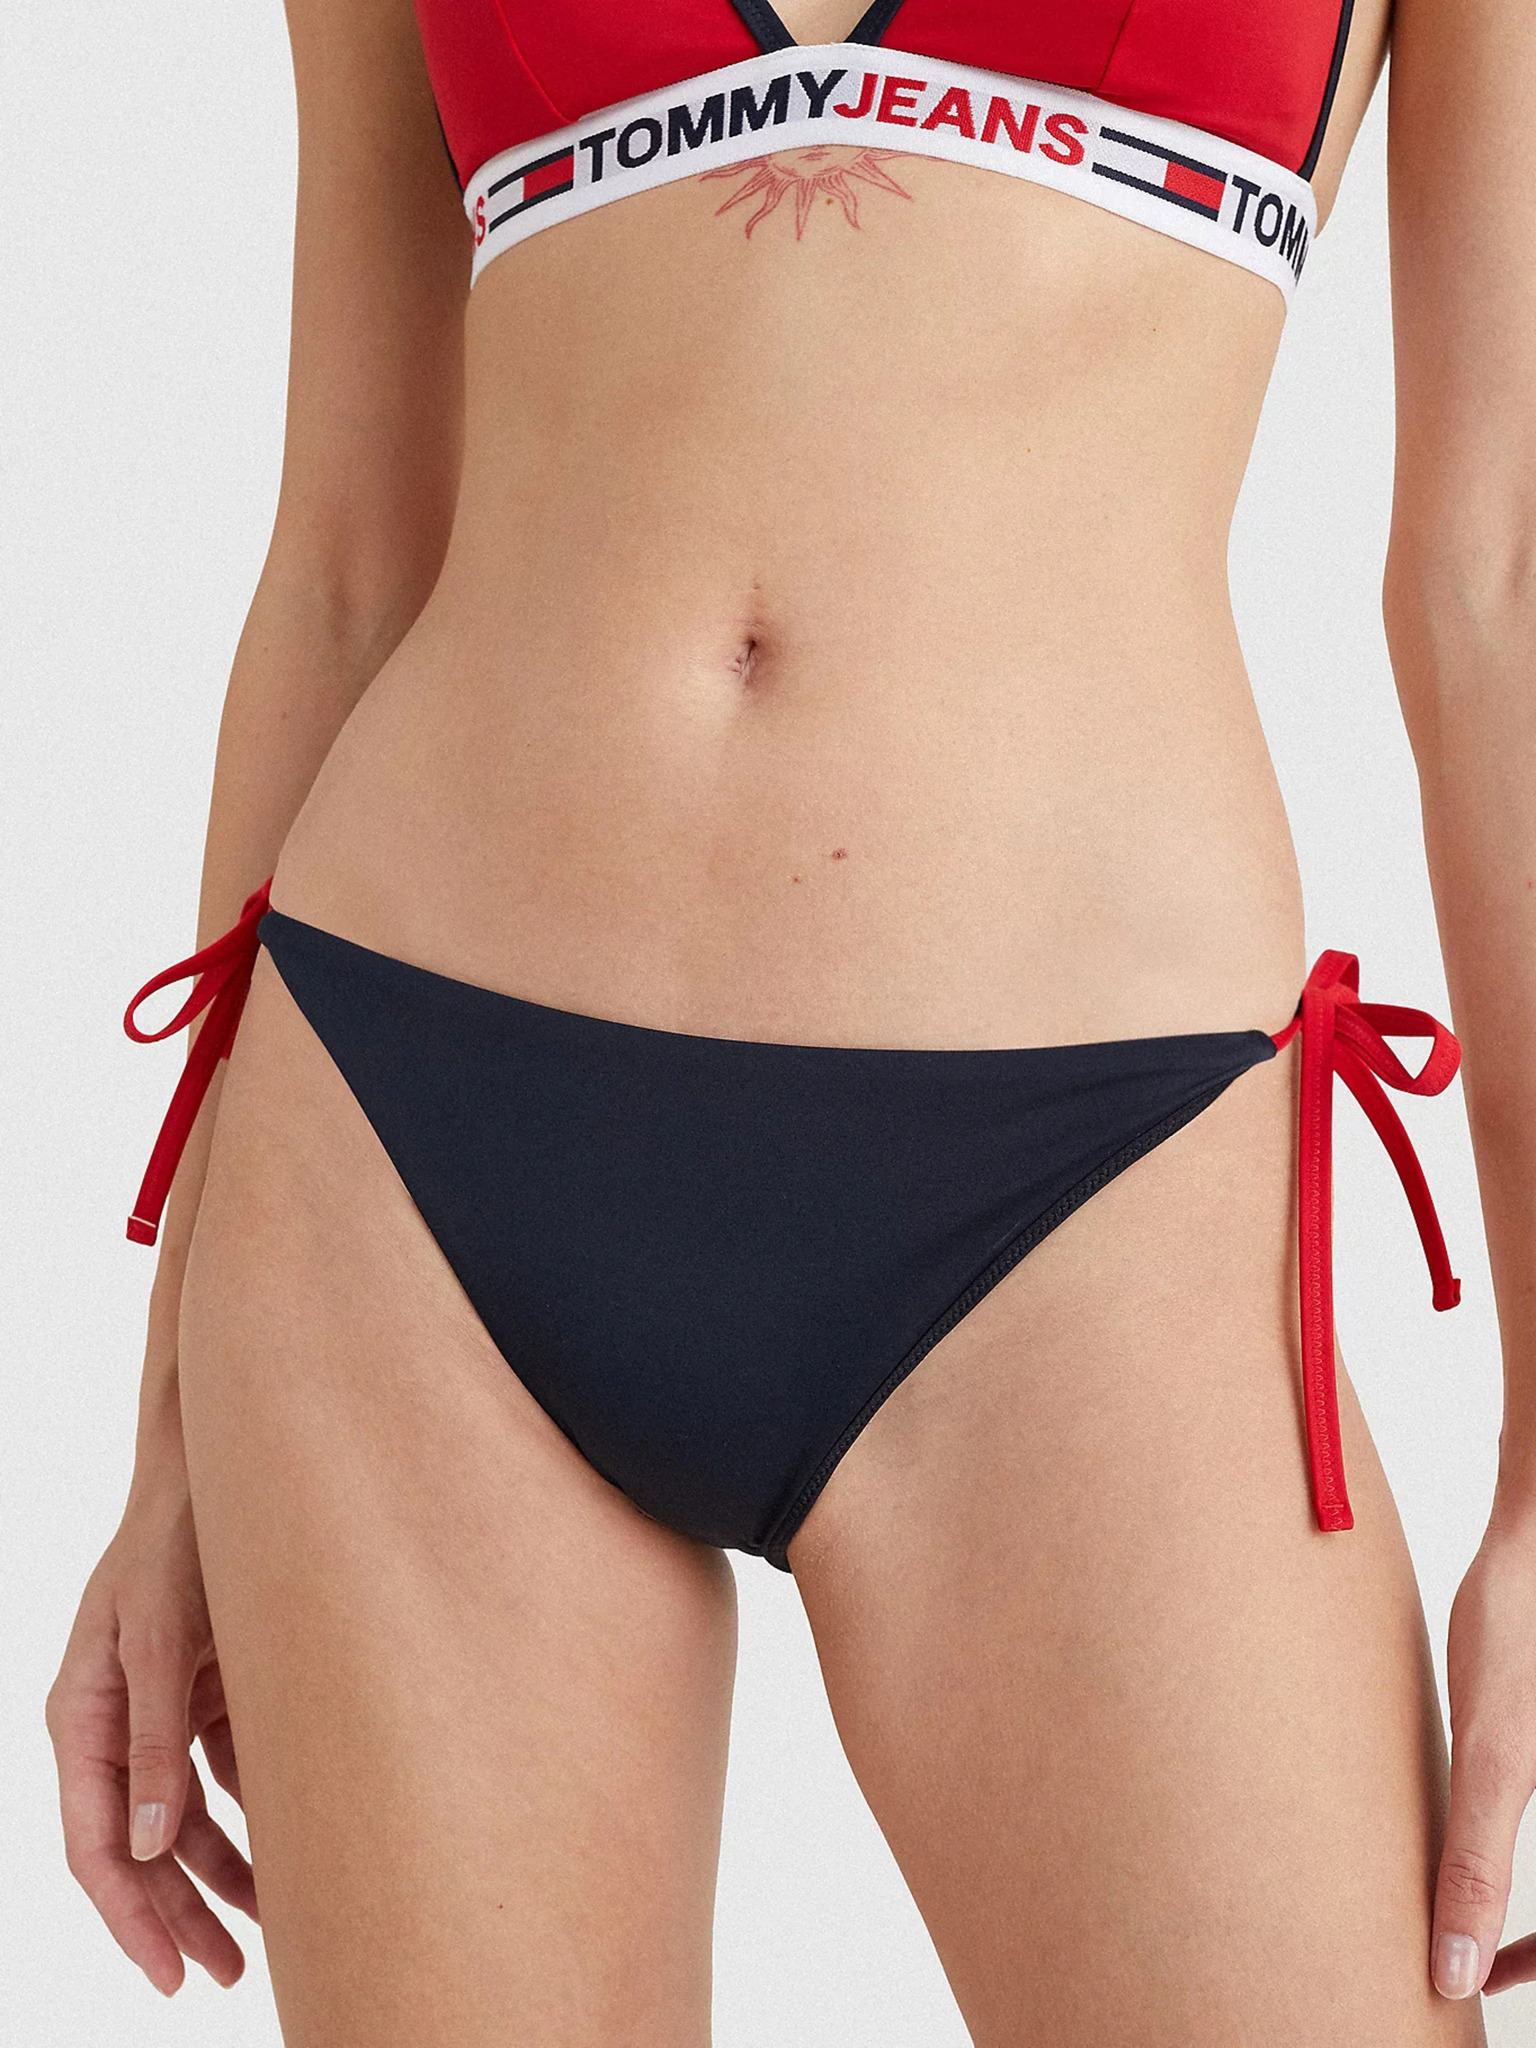 Hilfiger - bottom Underwear Tommy Bikini